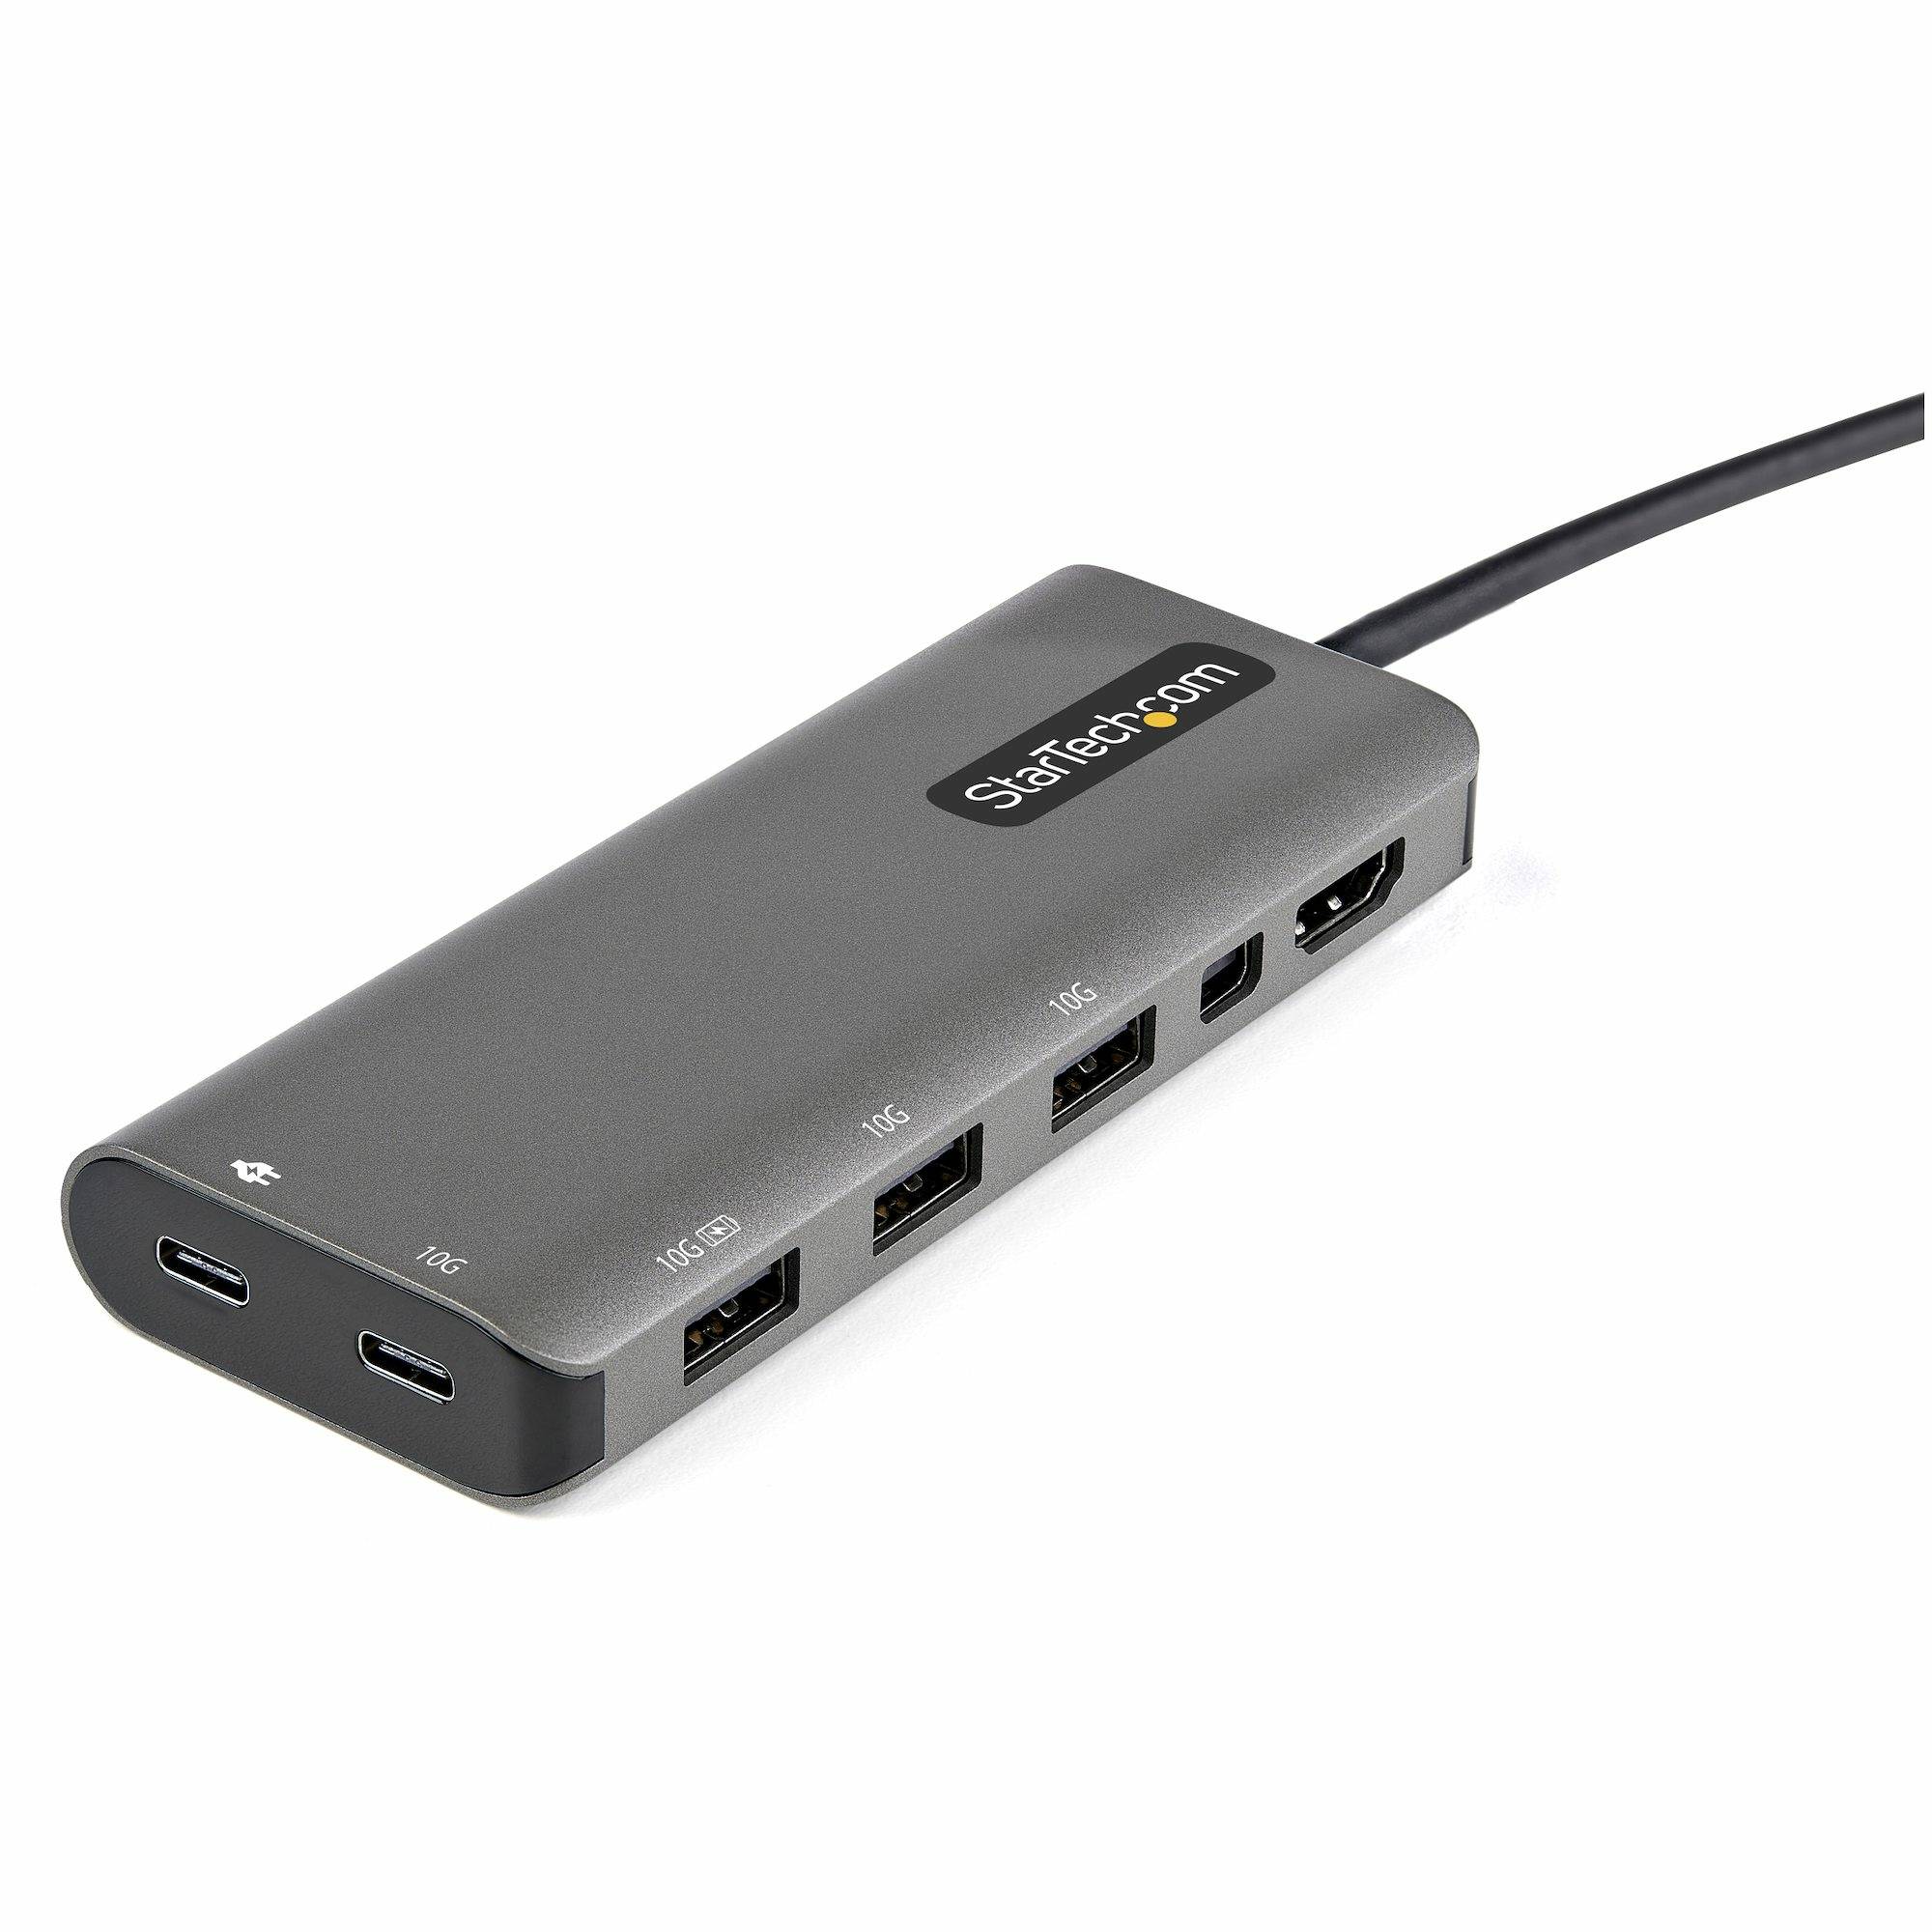 Rca Informatique - image du produit : USB C MULTIPORT ADAPTER 4K 60HZ HDMI OR MDP - 100 PD PASSTHROUGH